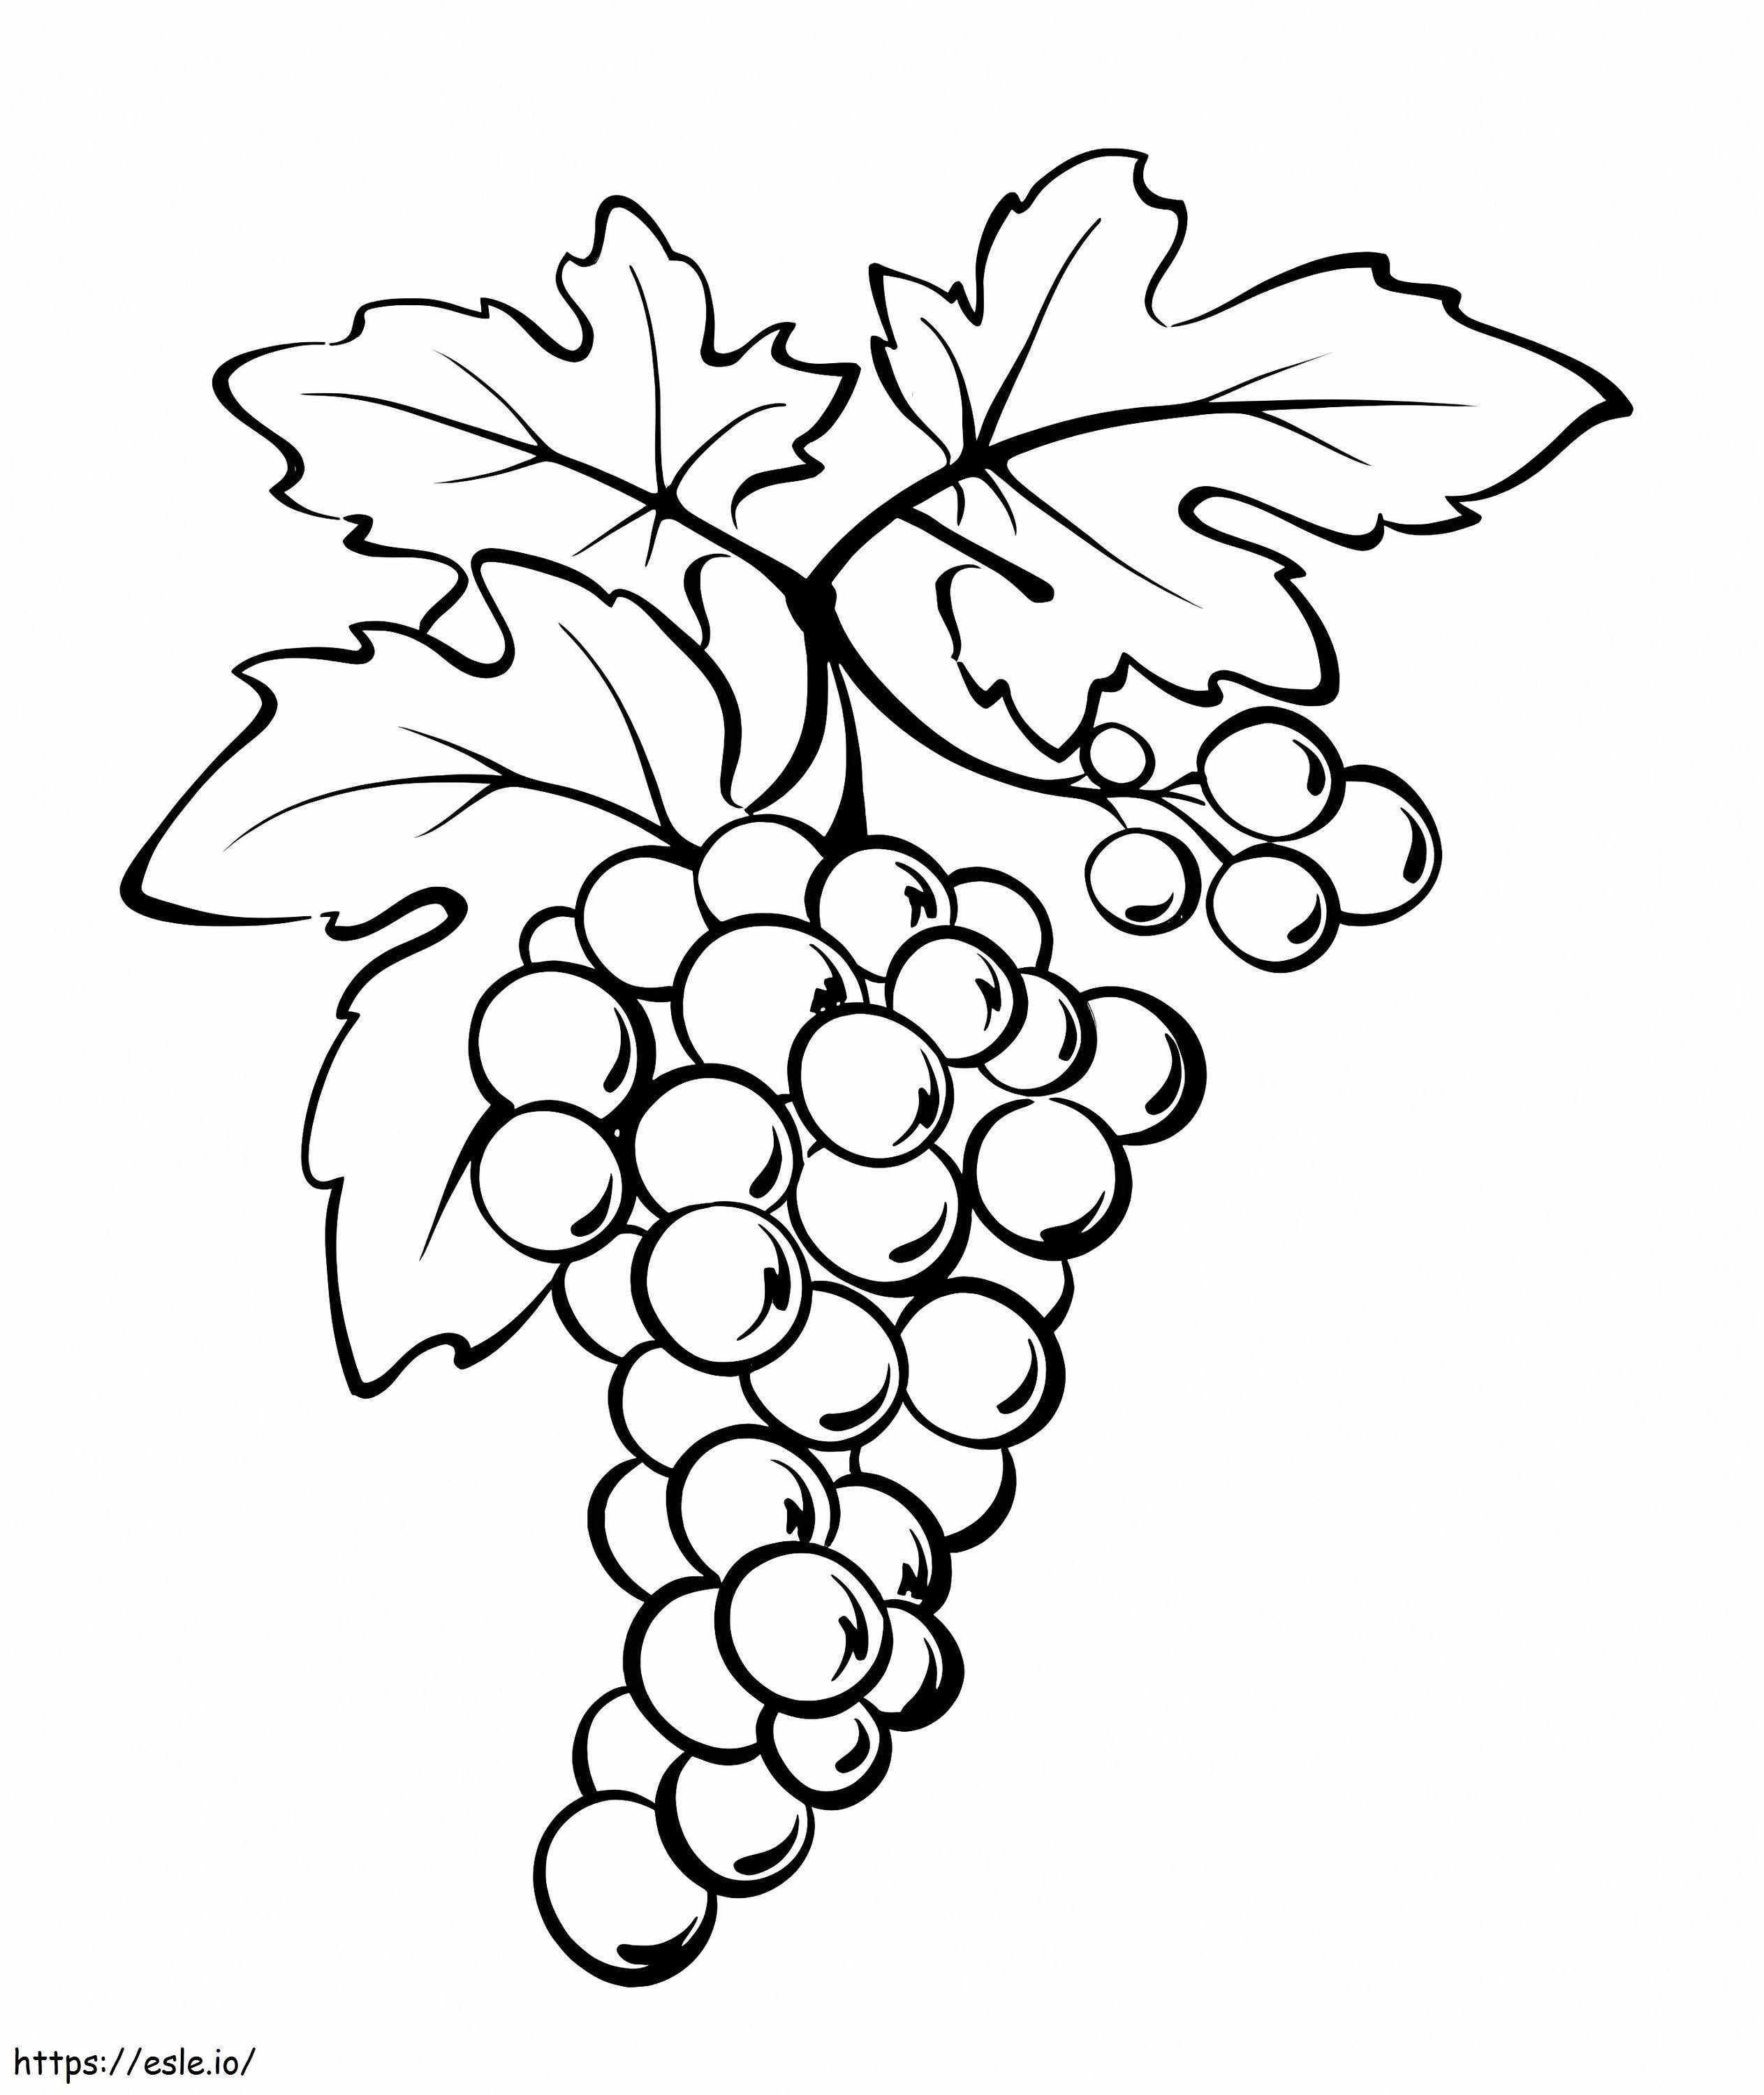 Coloriage Bons raisins à imprimer dessin